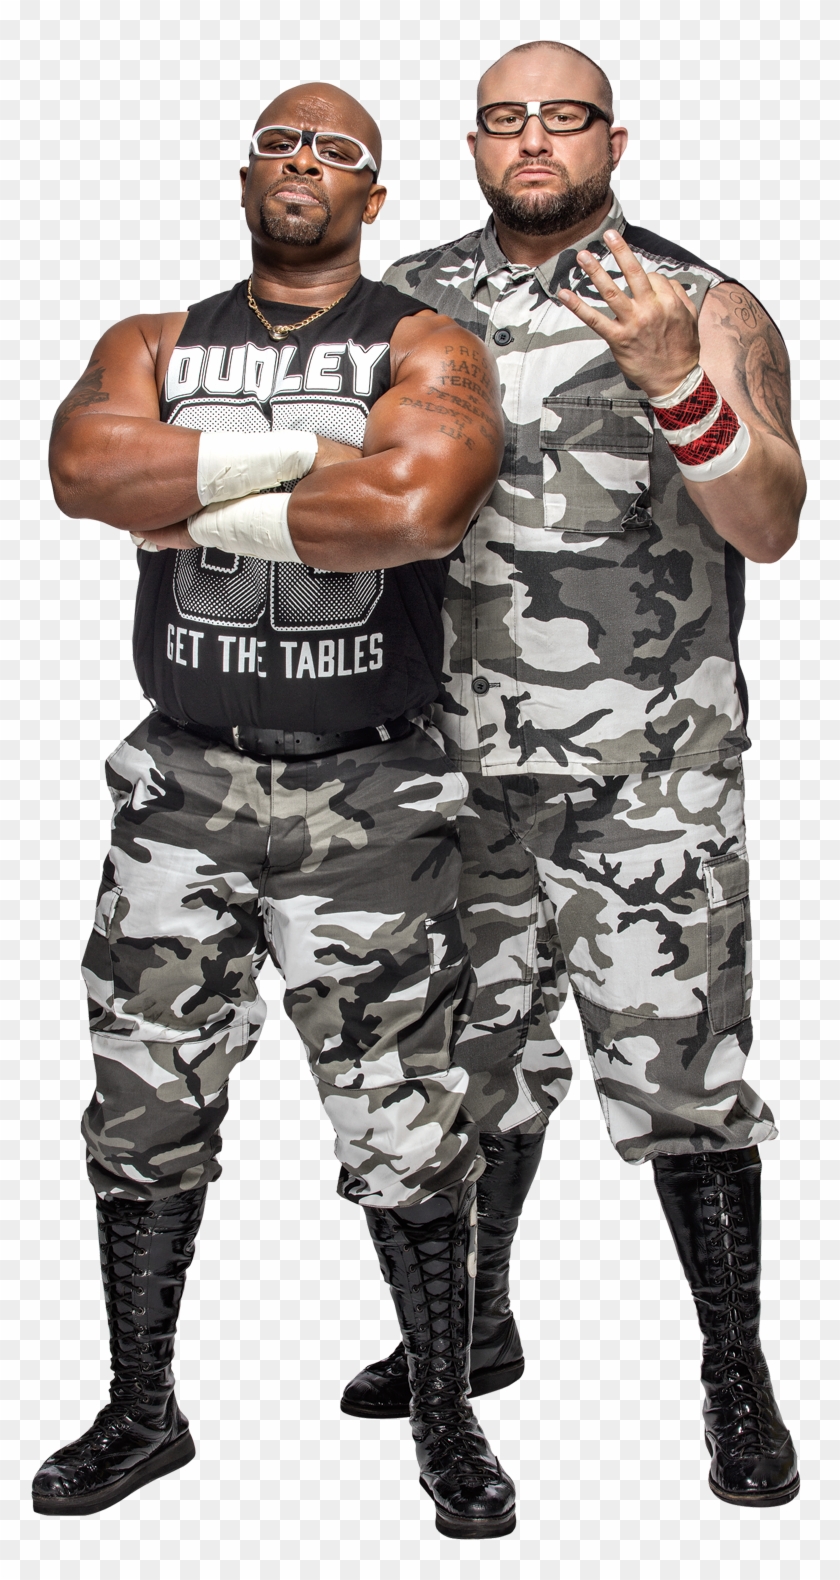 Dudley Boyz Raw Tag Team Champions Clipart #2468909